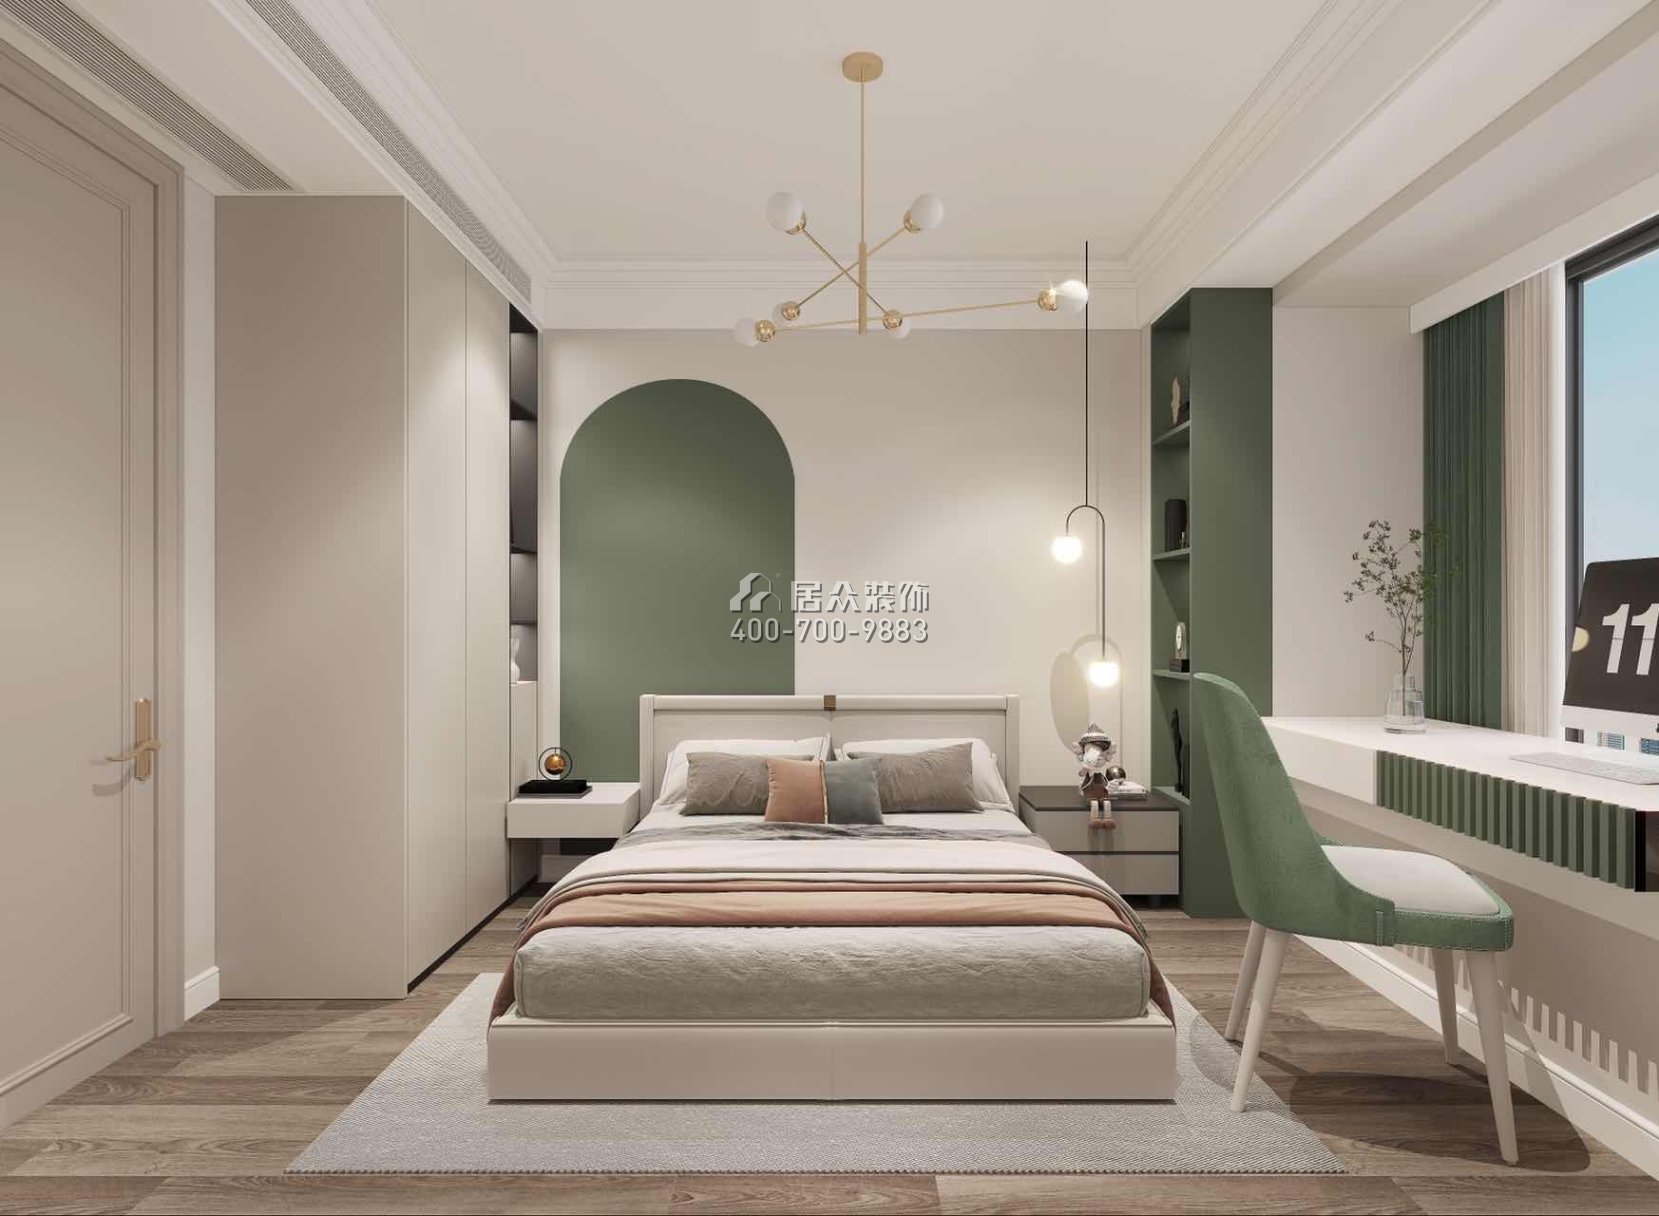 陽光棕櫚園100平方米混搭風格平層戶型臥室裝修效果圖